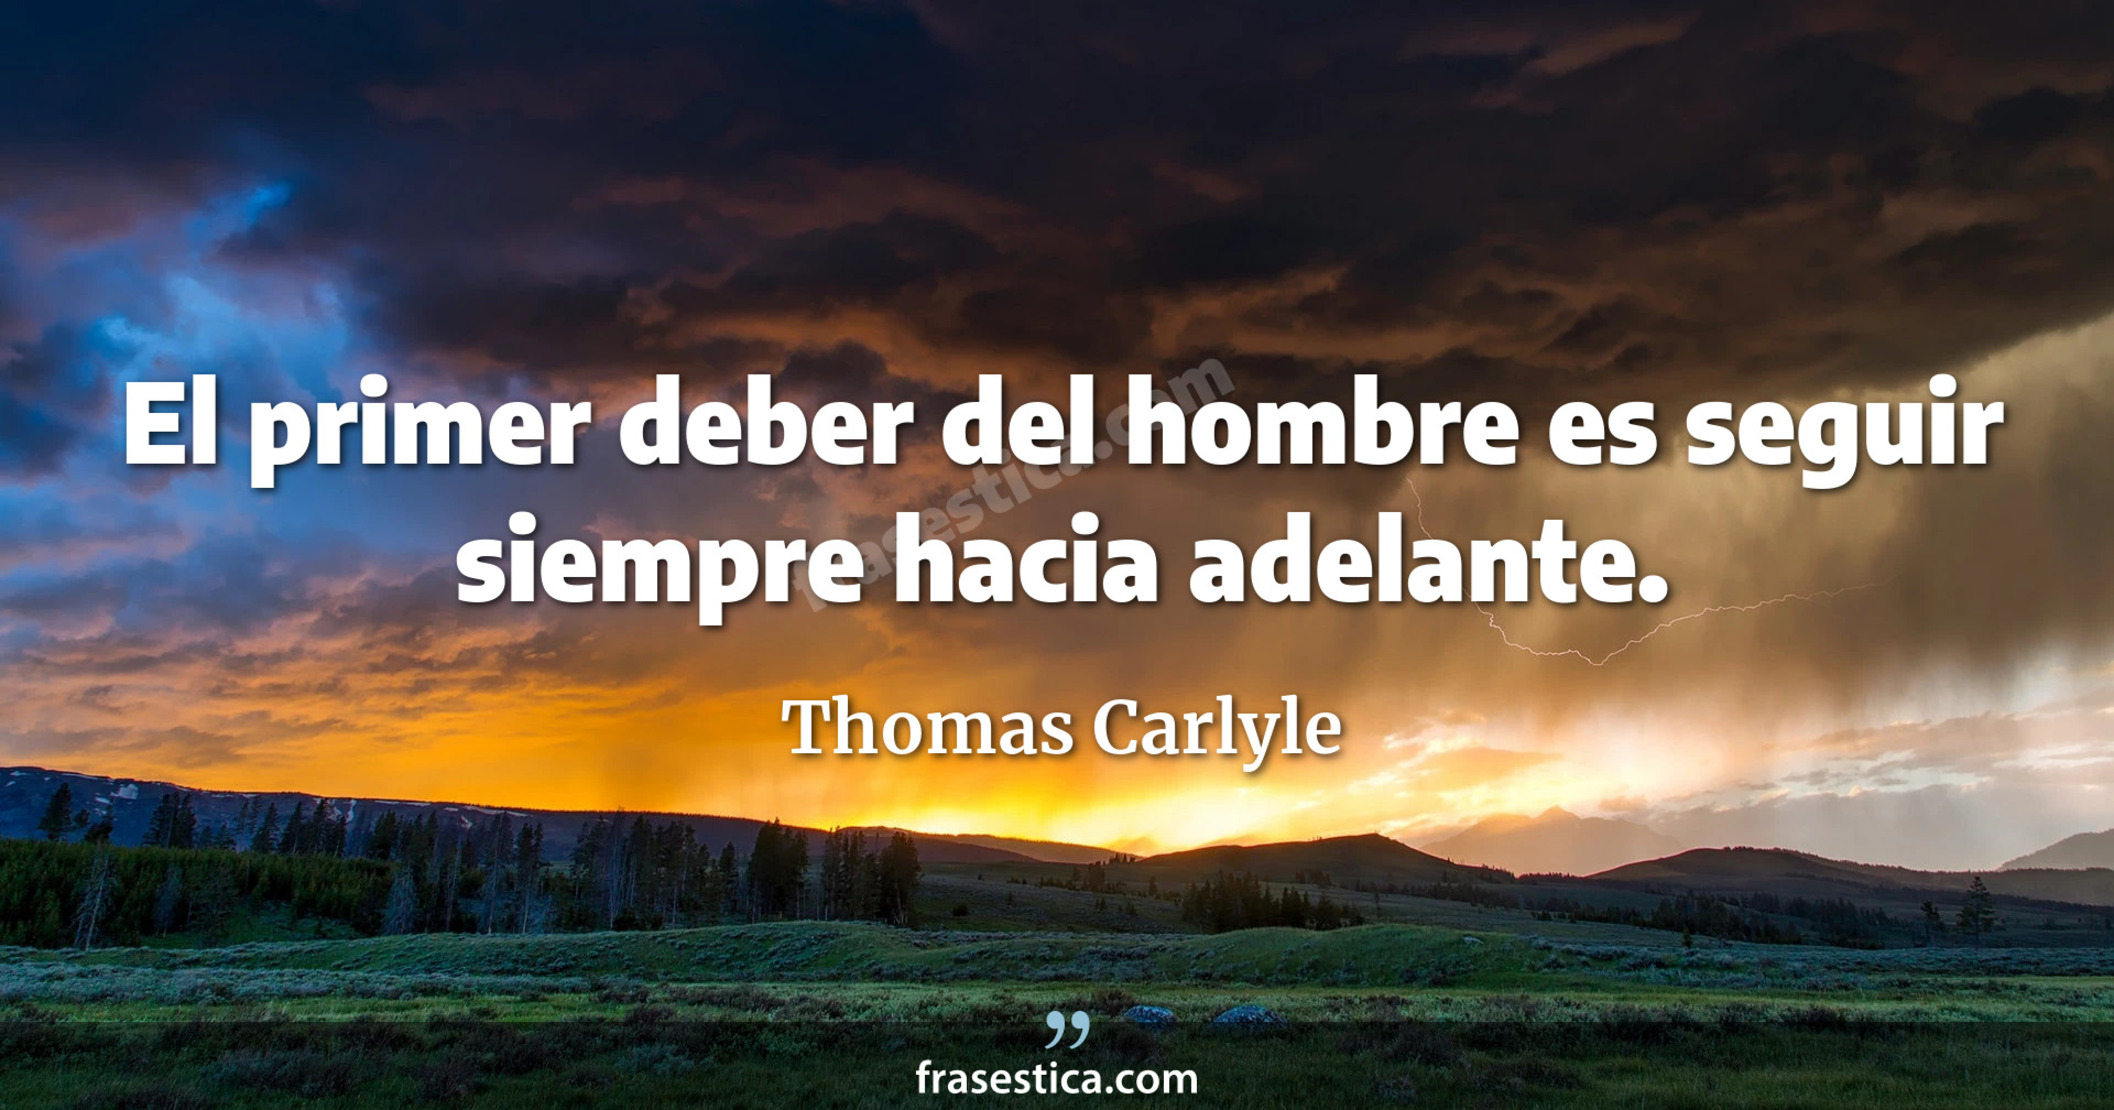 El primer deber del hombre es seguir siempre hacia adelante. - Thomas Carlyle